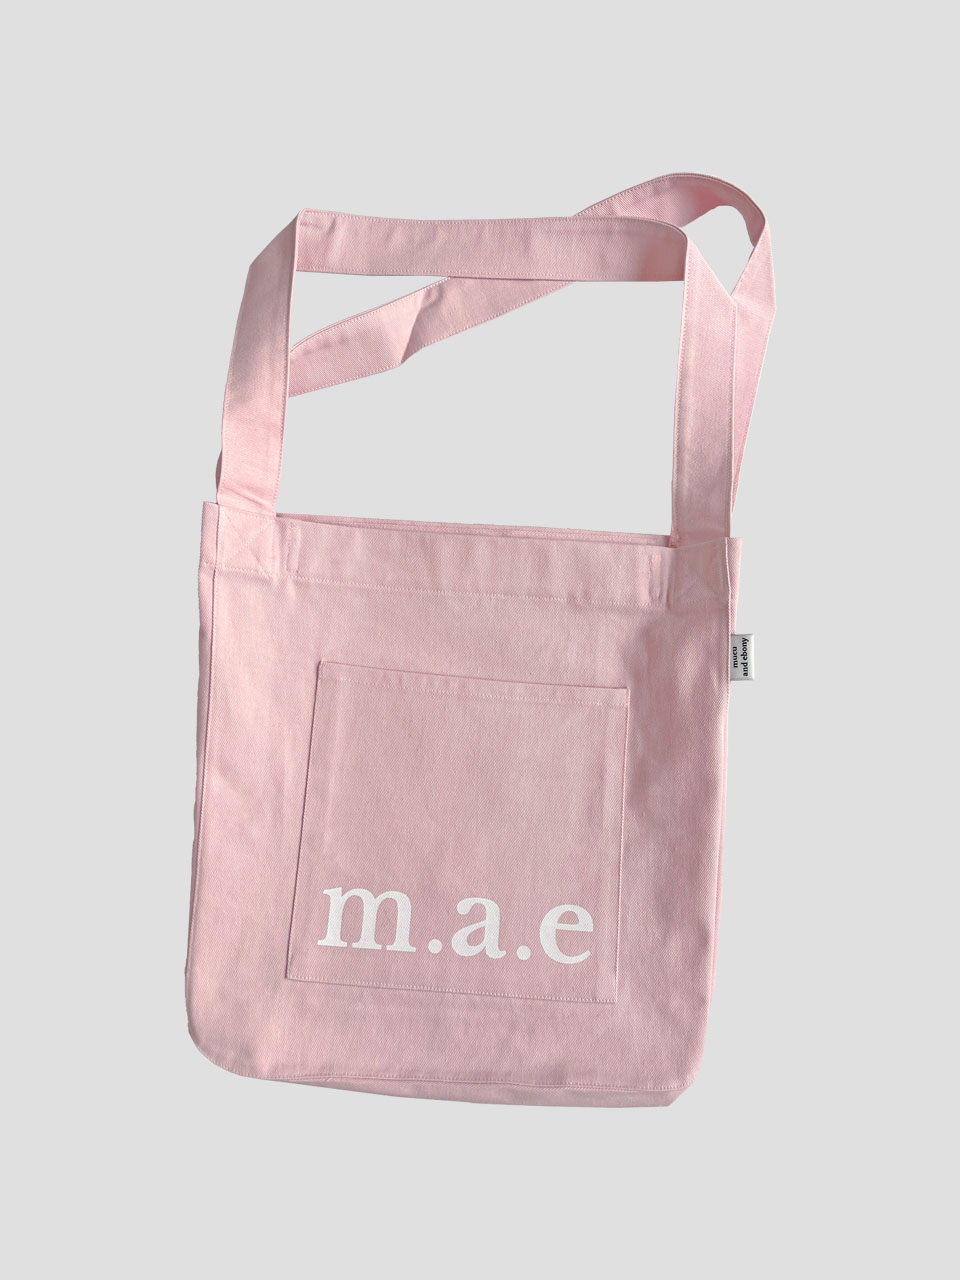 m.a.e Logo Bag _ Pink